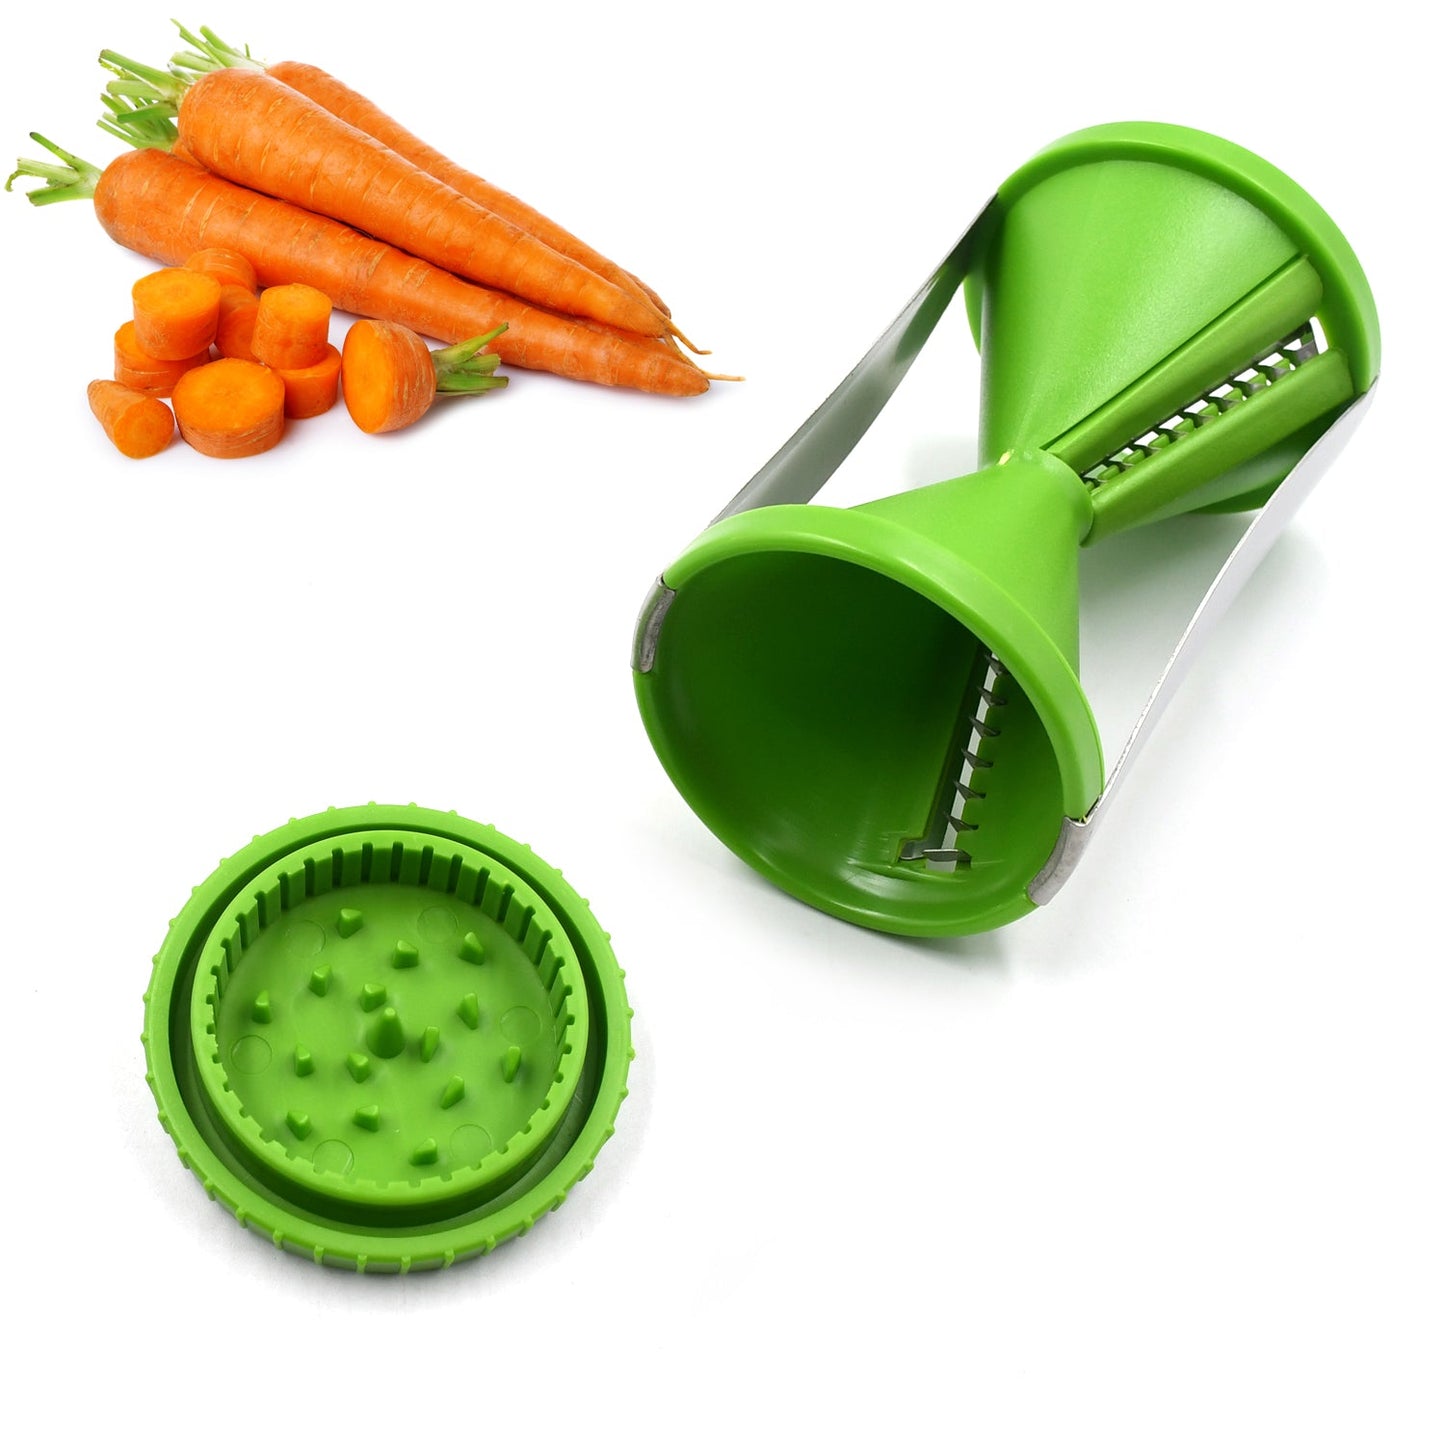 Portable Spiralizer Vegetable Slicer Handheld Spiralizer Peeler Stainless Steel Spiral Slicer For Salad Vegetables Fruit Slicer